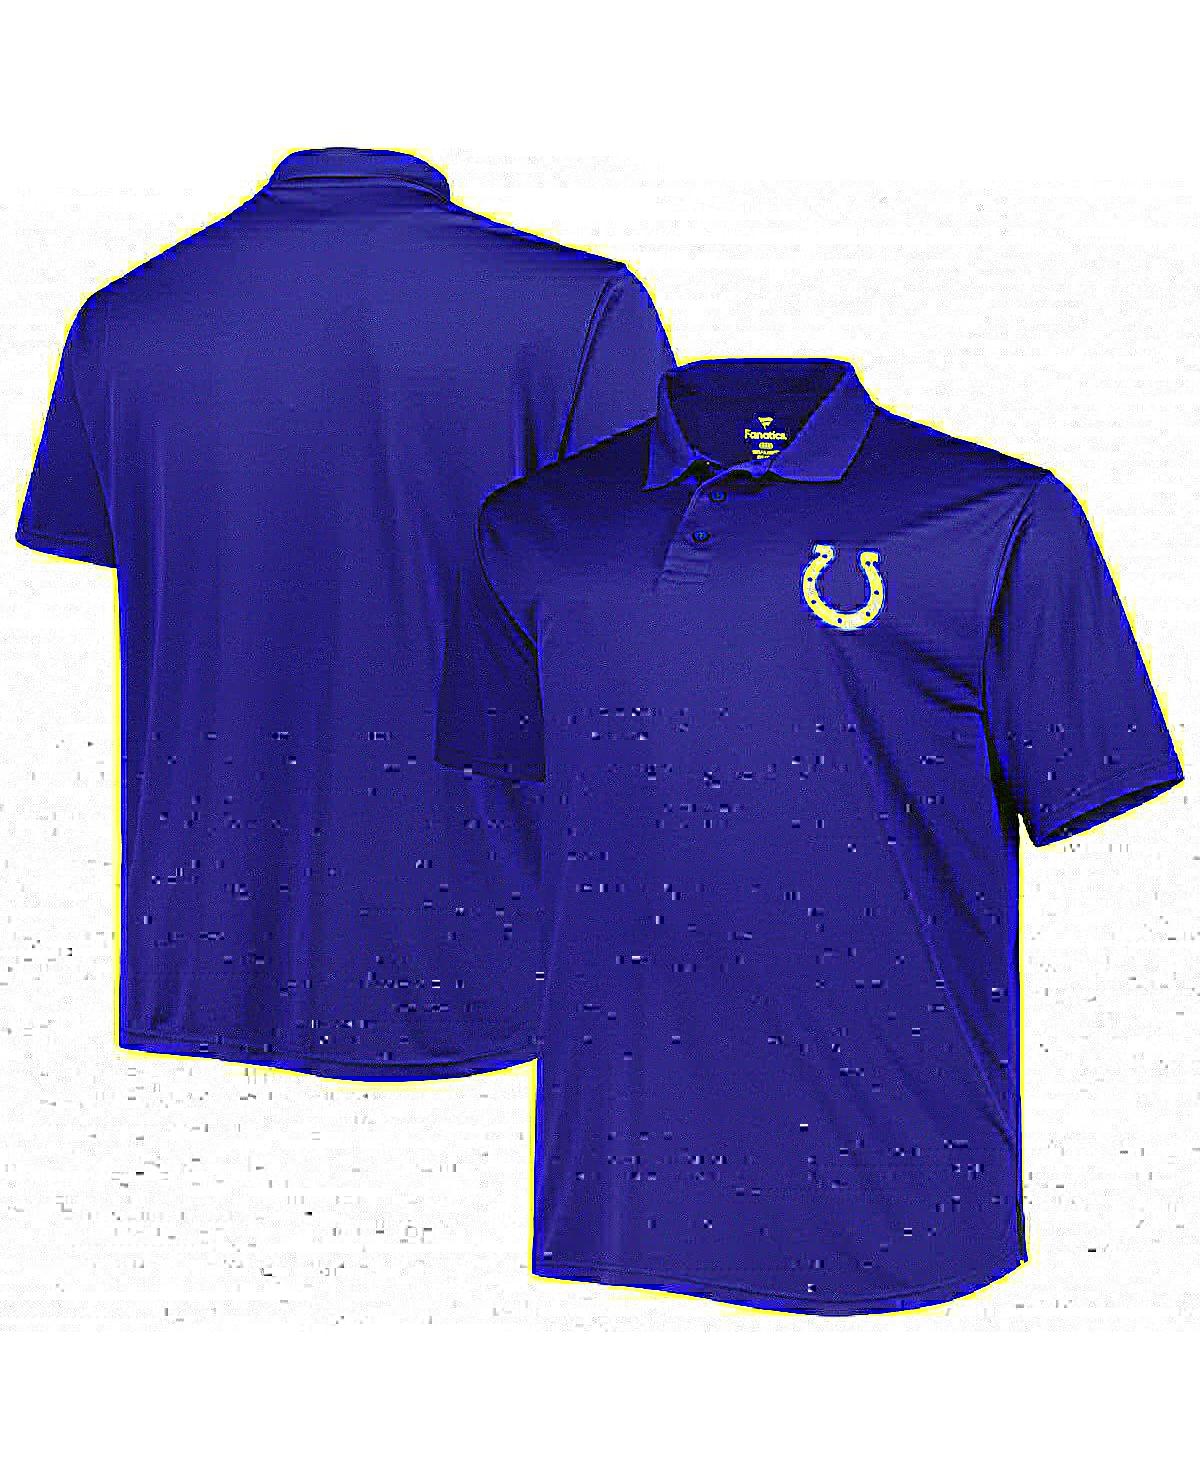 Shop Fanatics Men's Royal Indianapolis Colts Big And Tall Birdseye Polo Shirt